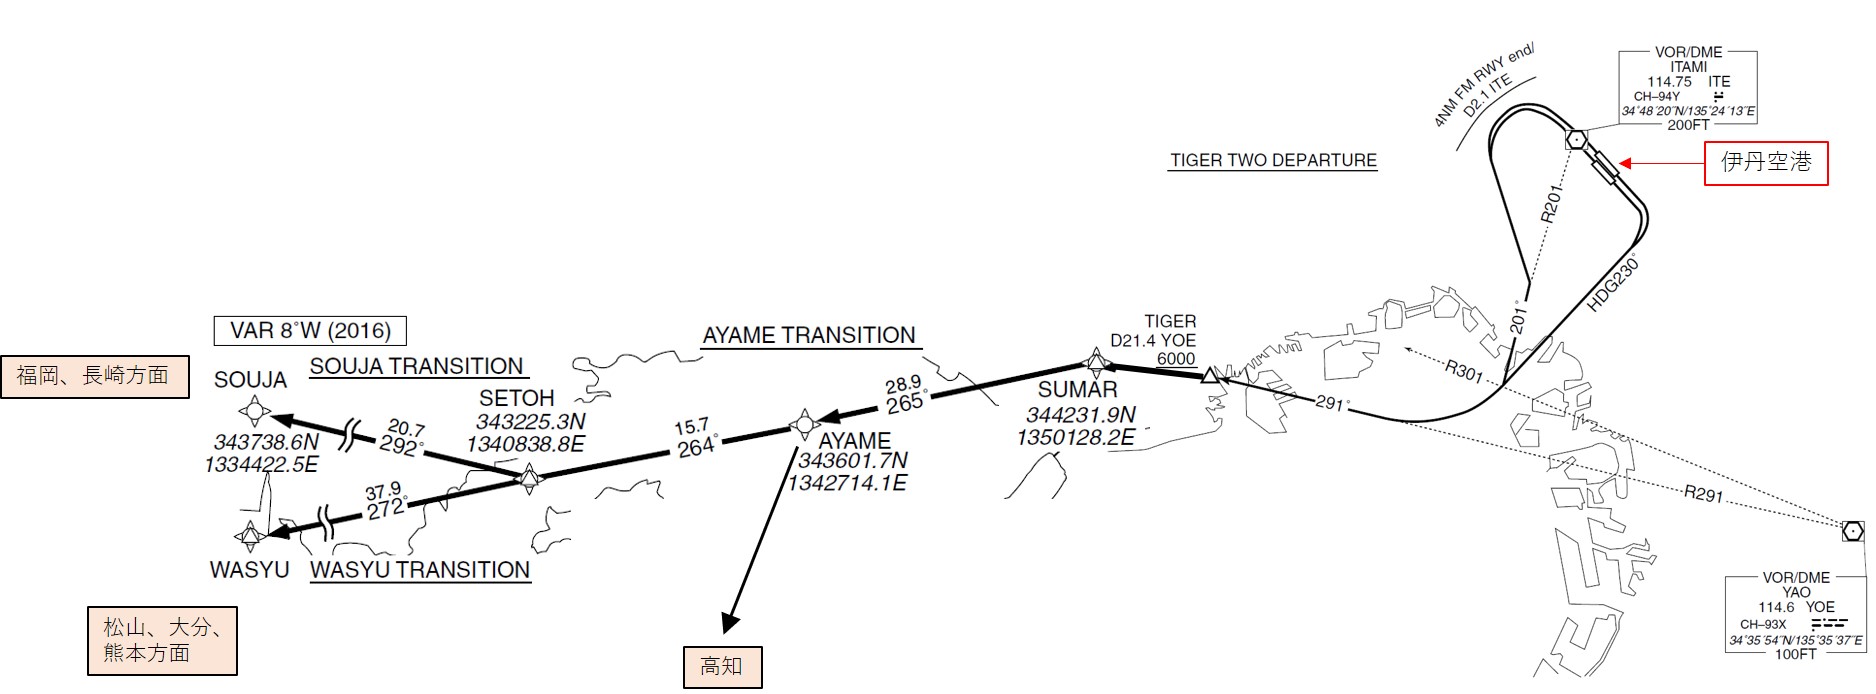 TIGER DEPARTUREからSOUJA・WASYU・AYAME TRANSITIONへの飛行経路